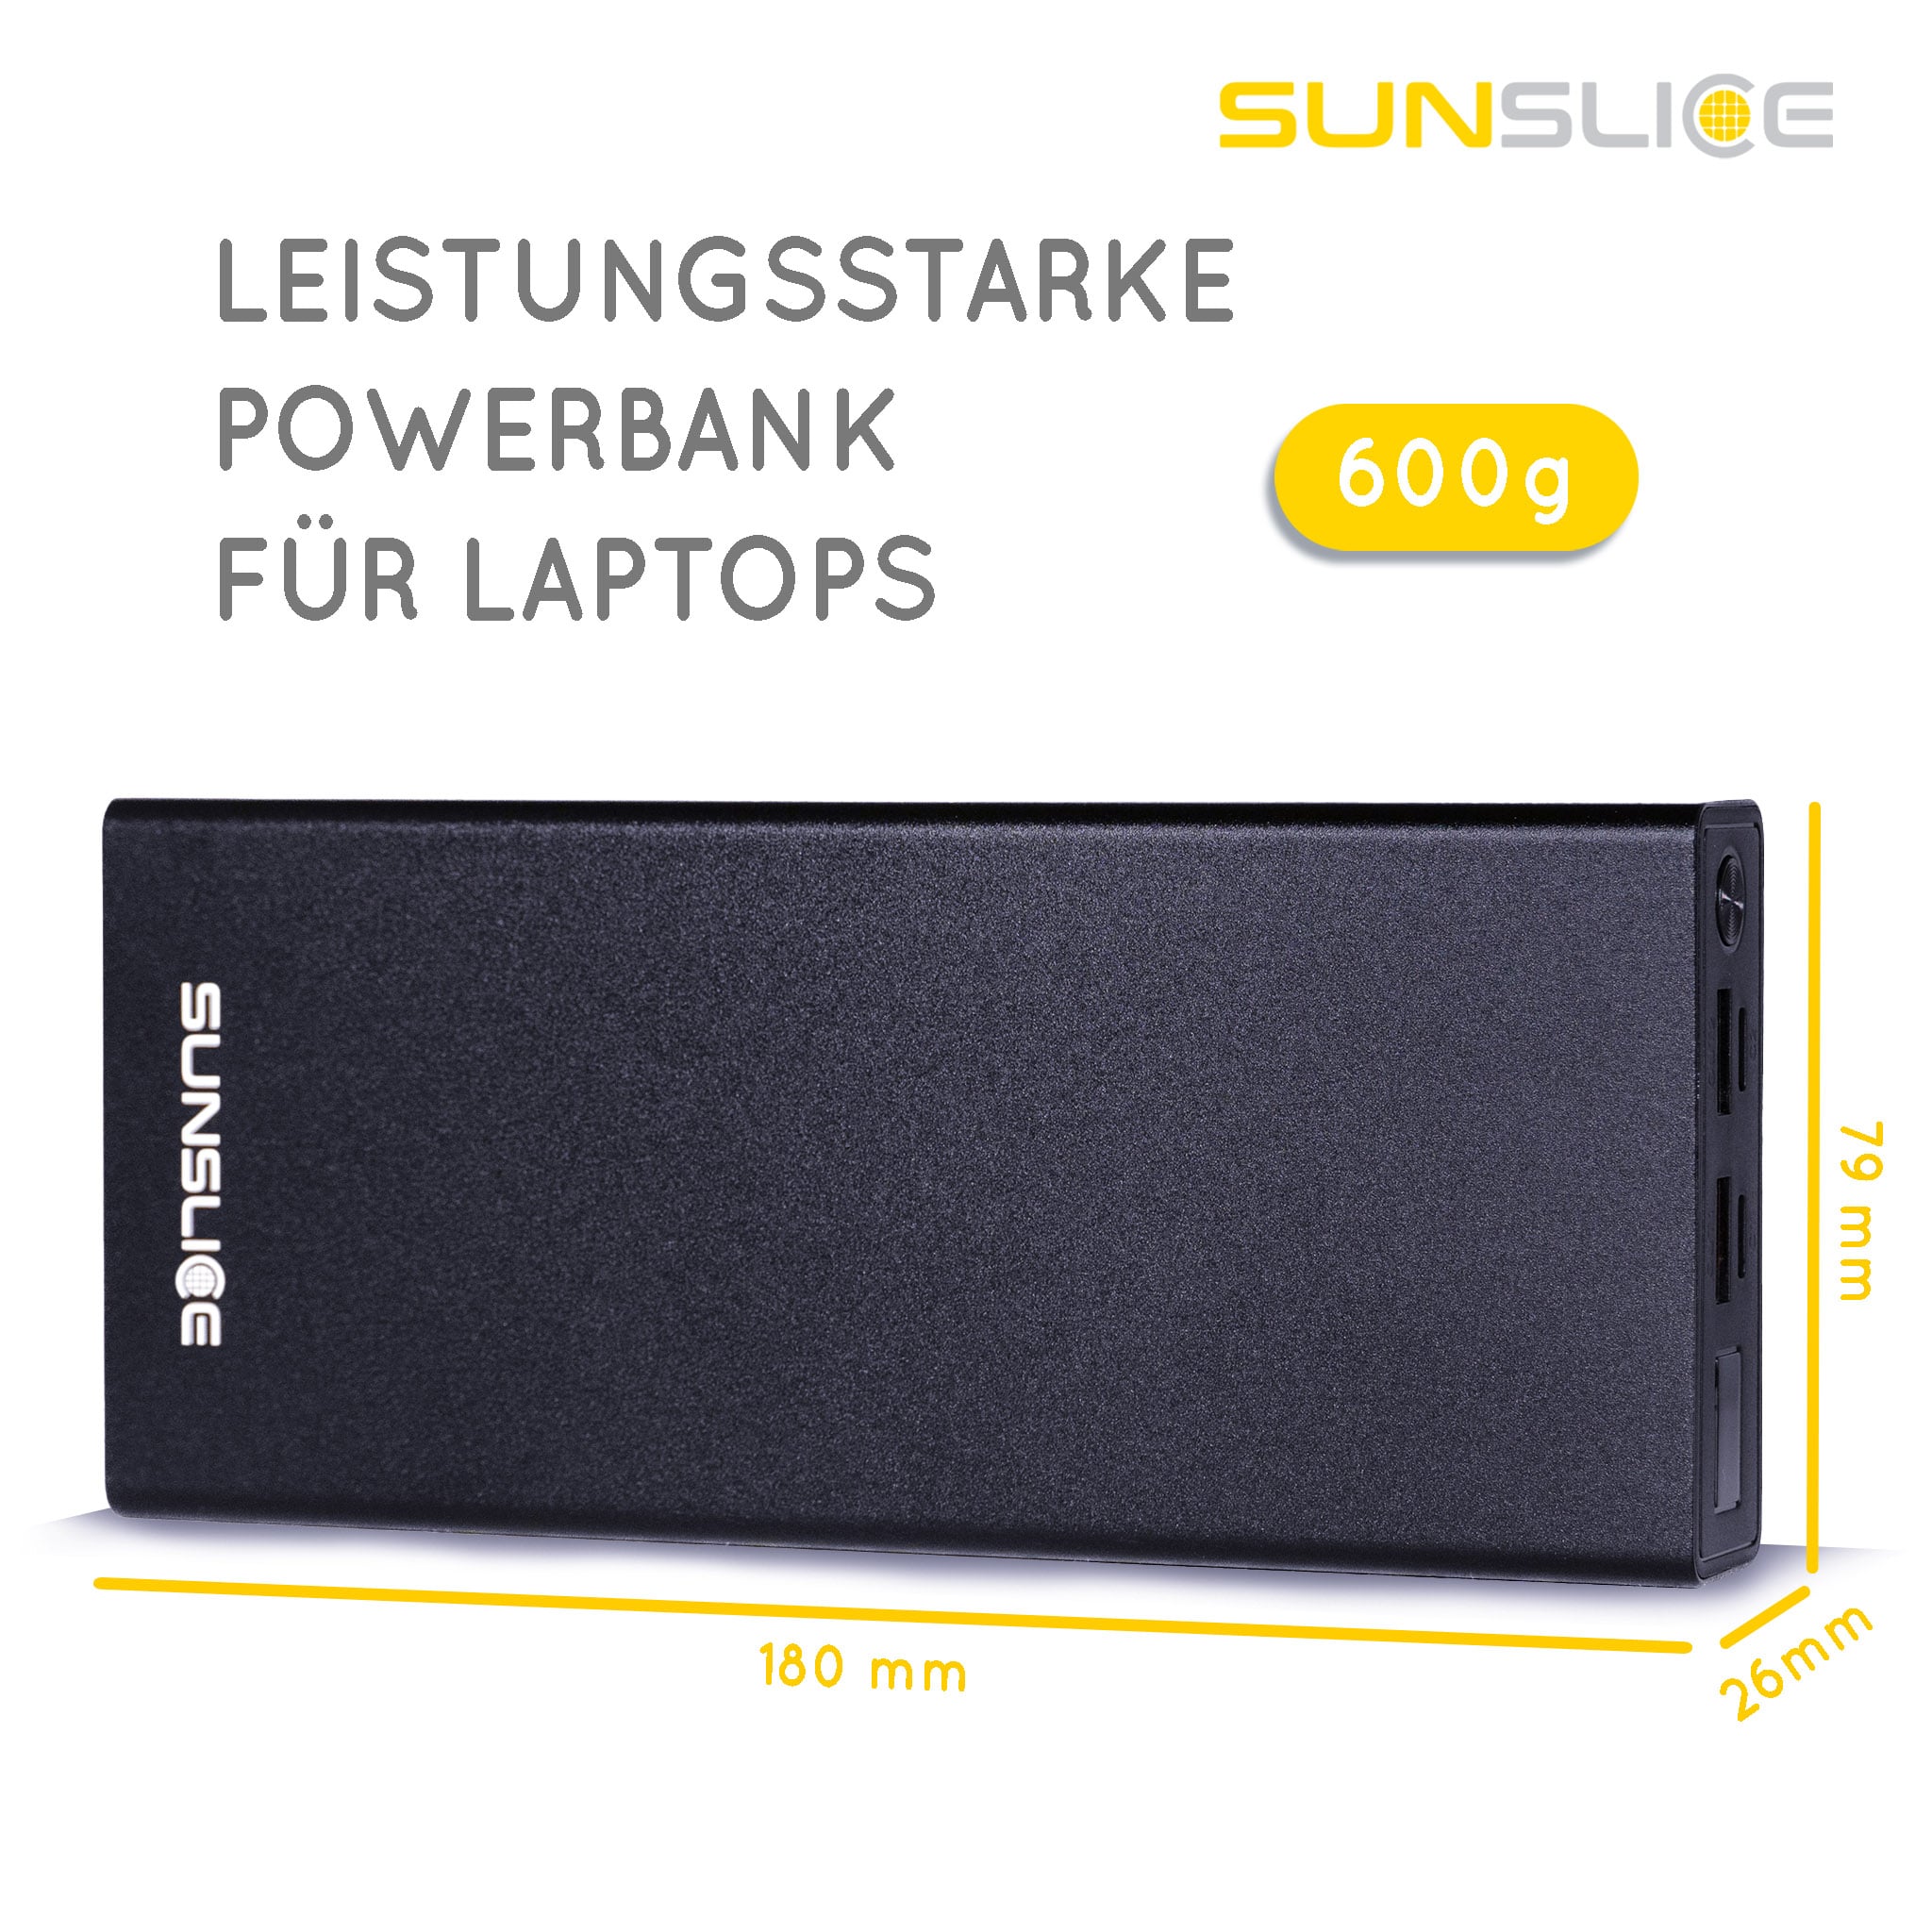 Powerbank Gravity 27 Größenangaben: 180 mm, 79 mm, 26 mm. Gewicht: 600g Leistungsstarke Powerbank für Laptop